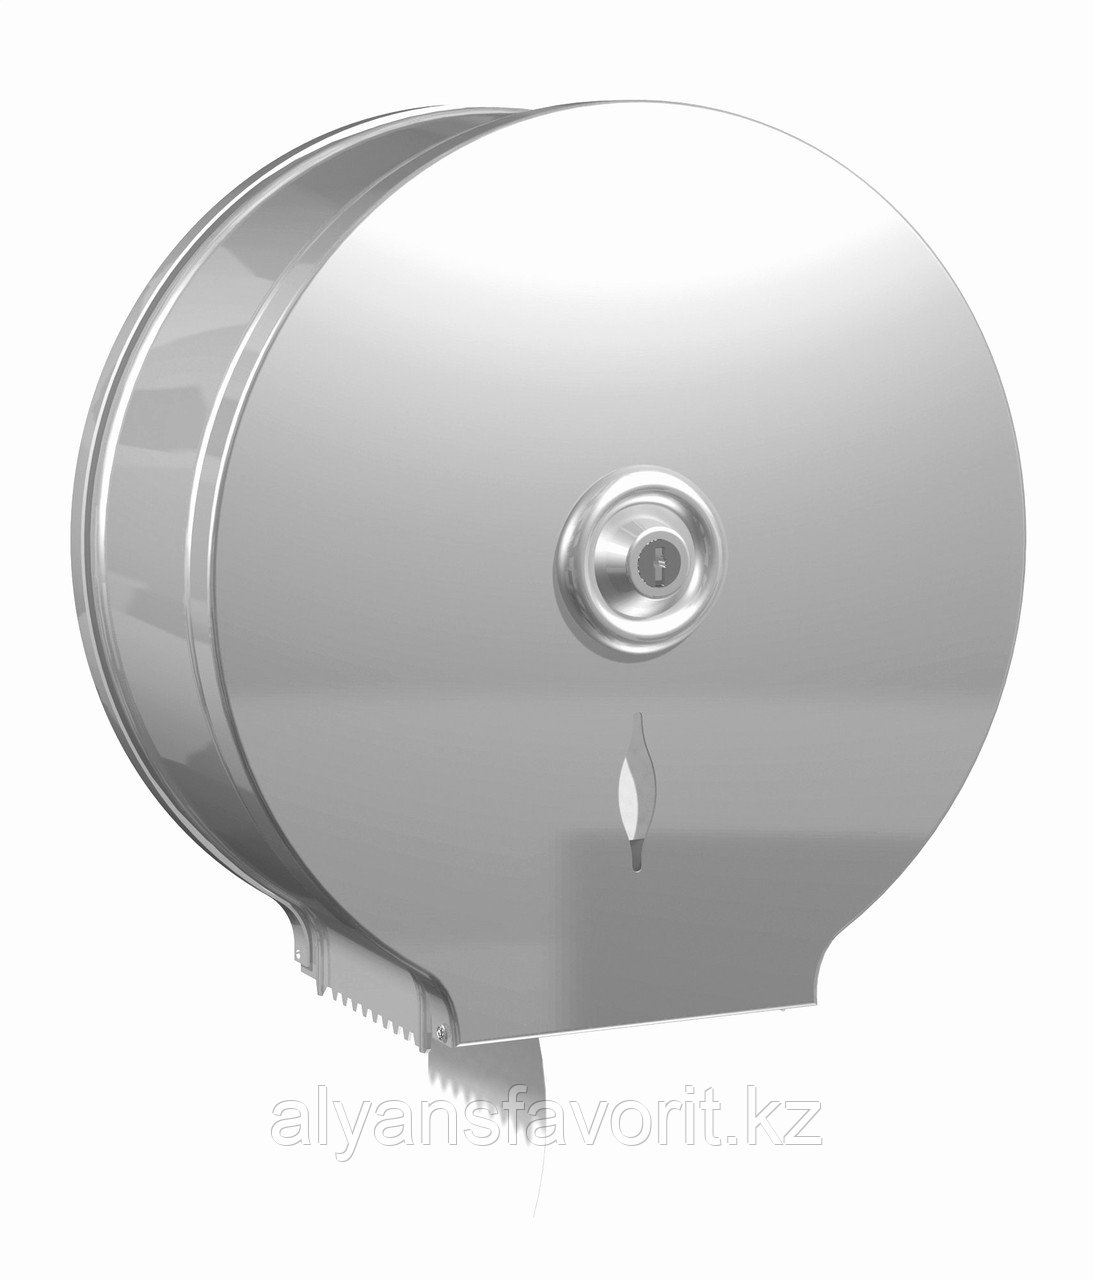 Диспенсер для туалетной бумаги Jumbo (Джамбо) металлический, антивандальный. Китай